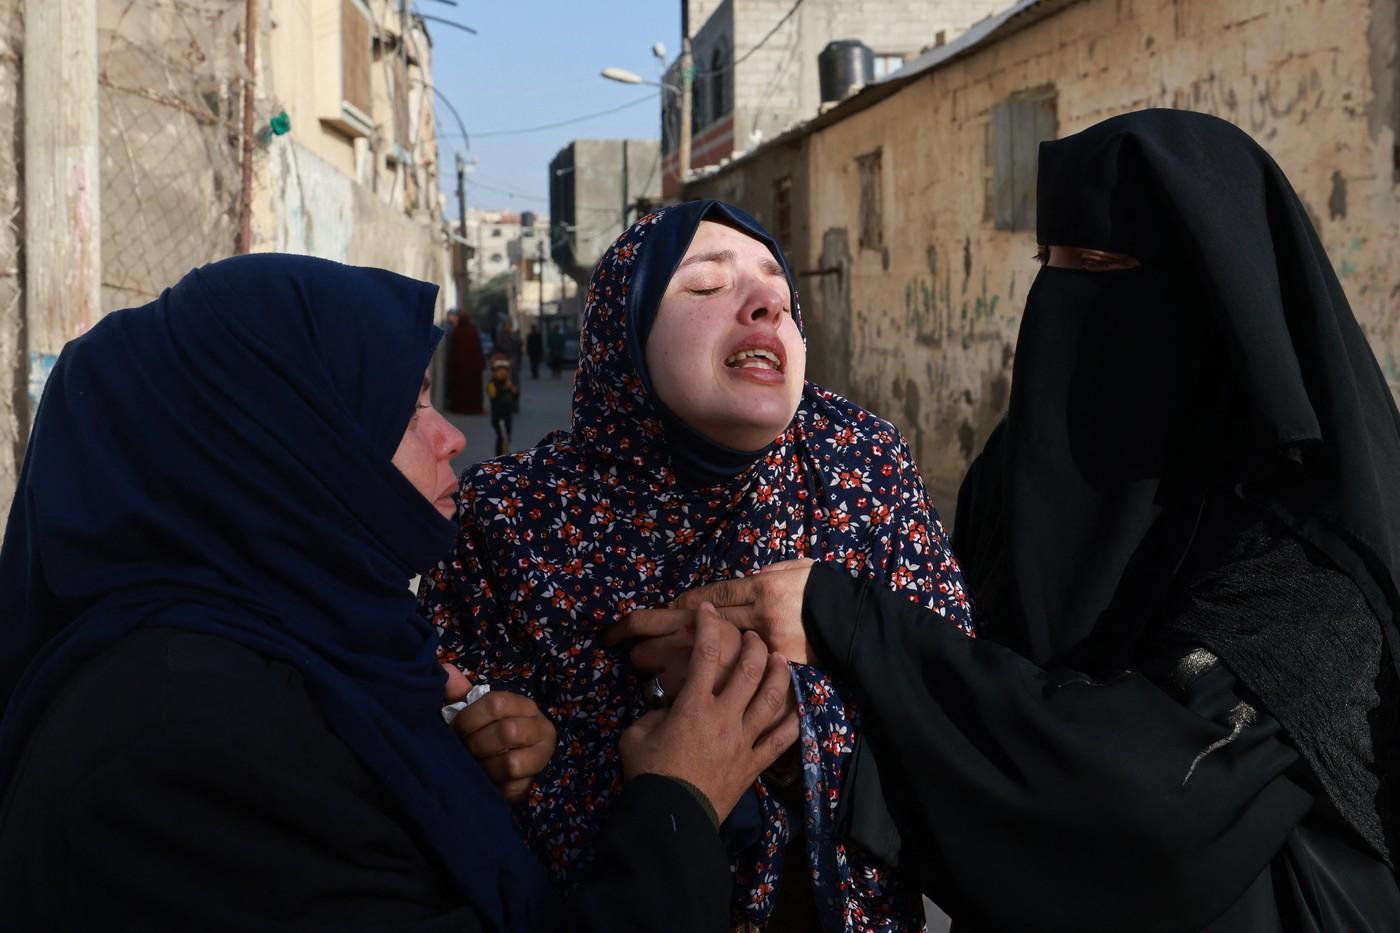 Gemenii născuţi şi morţi în timpul războiului din Gaza. Mama, sfâşiată de durere la înmormântare: "Dormeam, nu împuşcam şi nu ne luptam. Care este vina lor?"